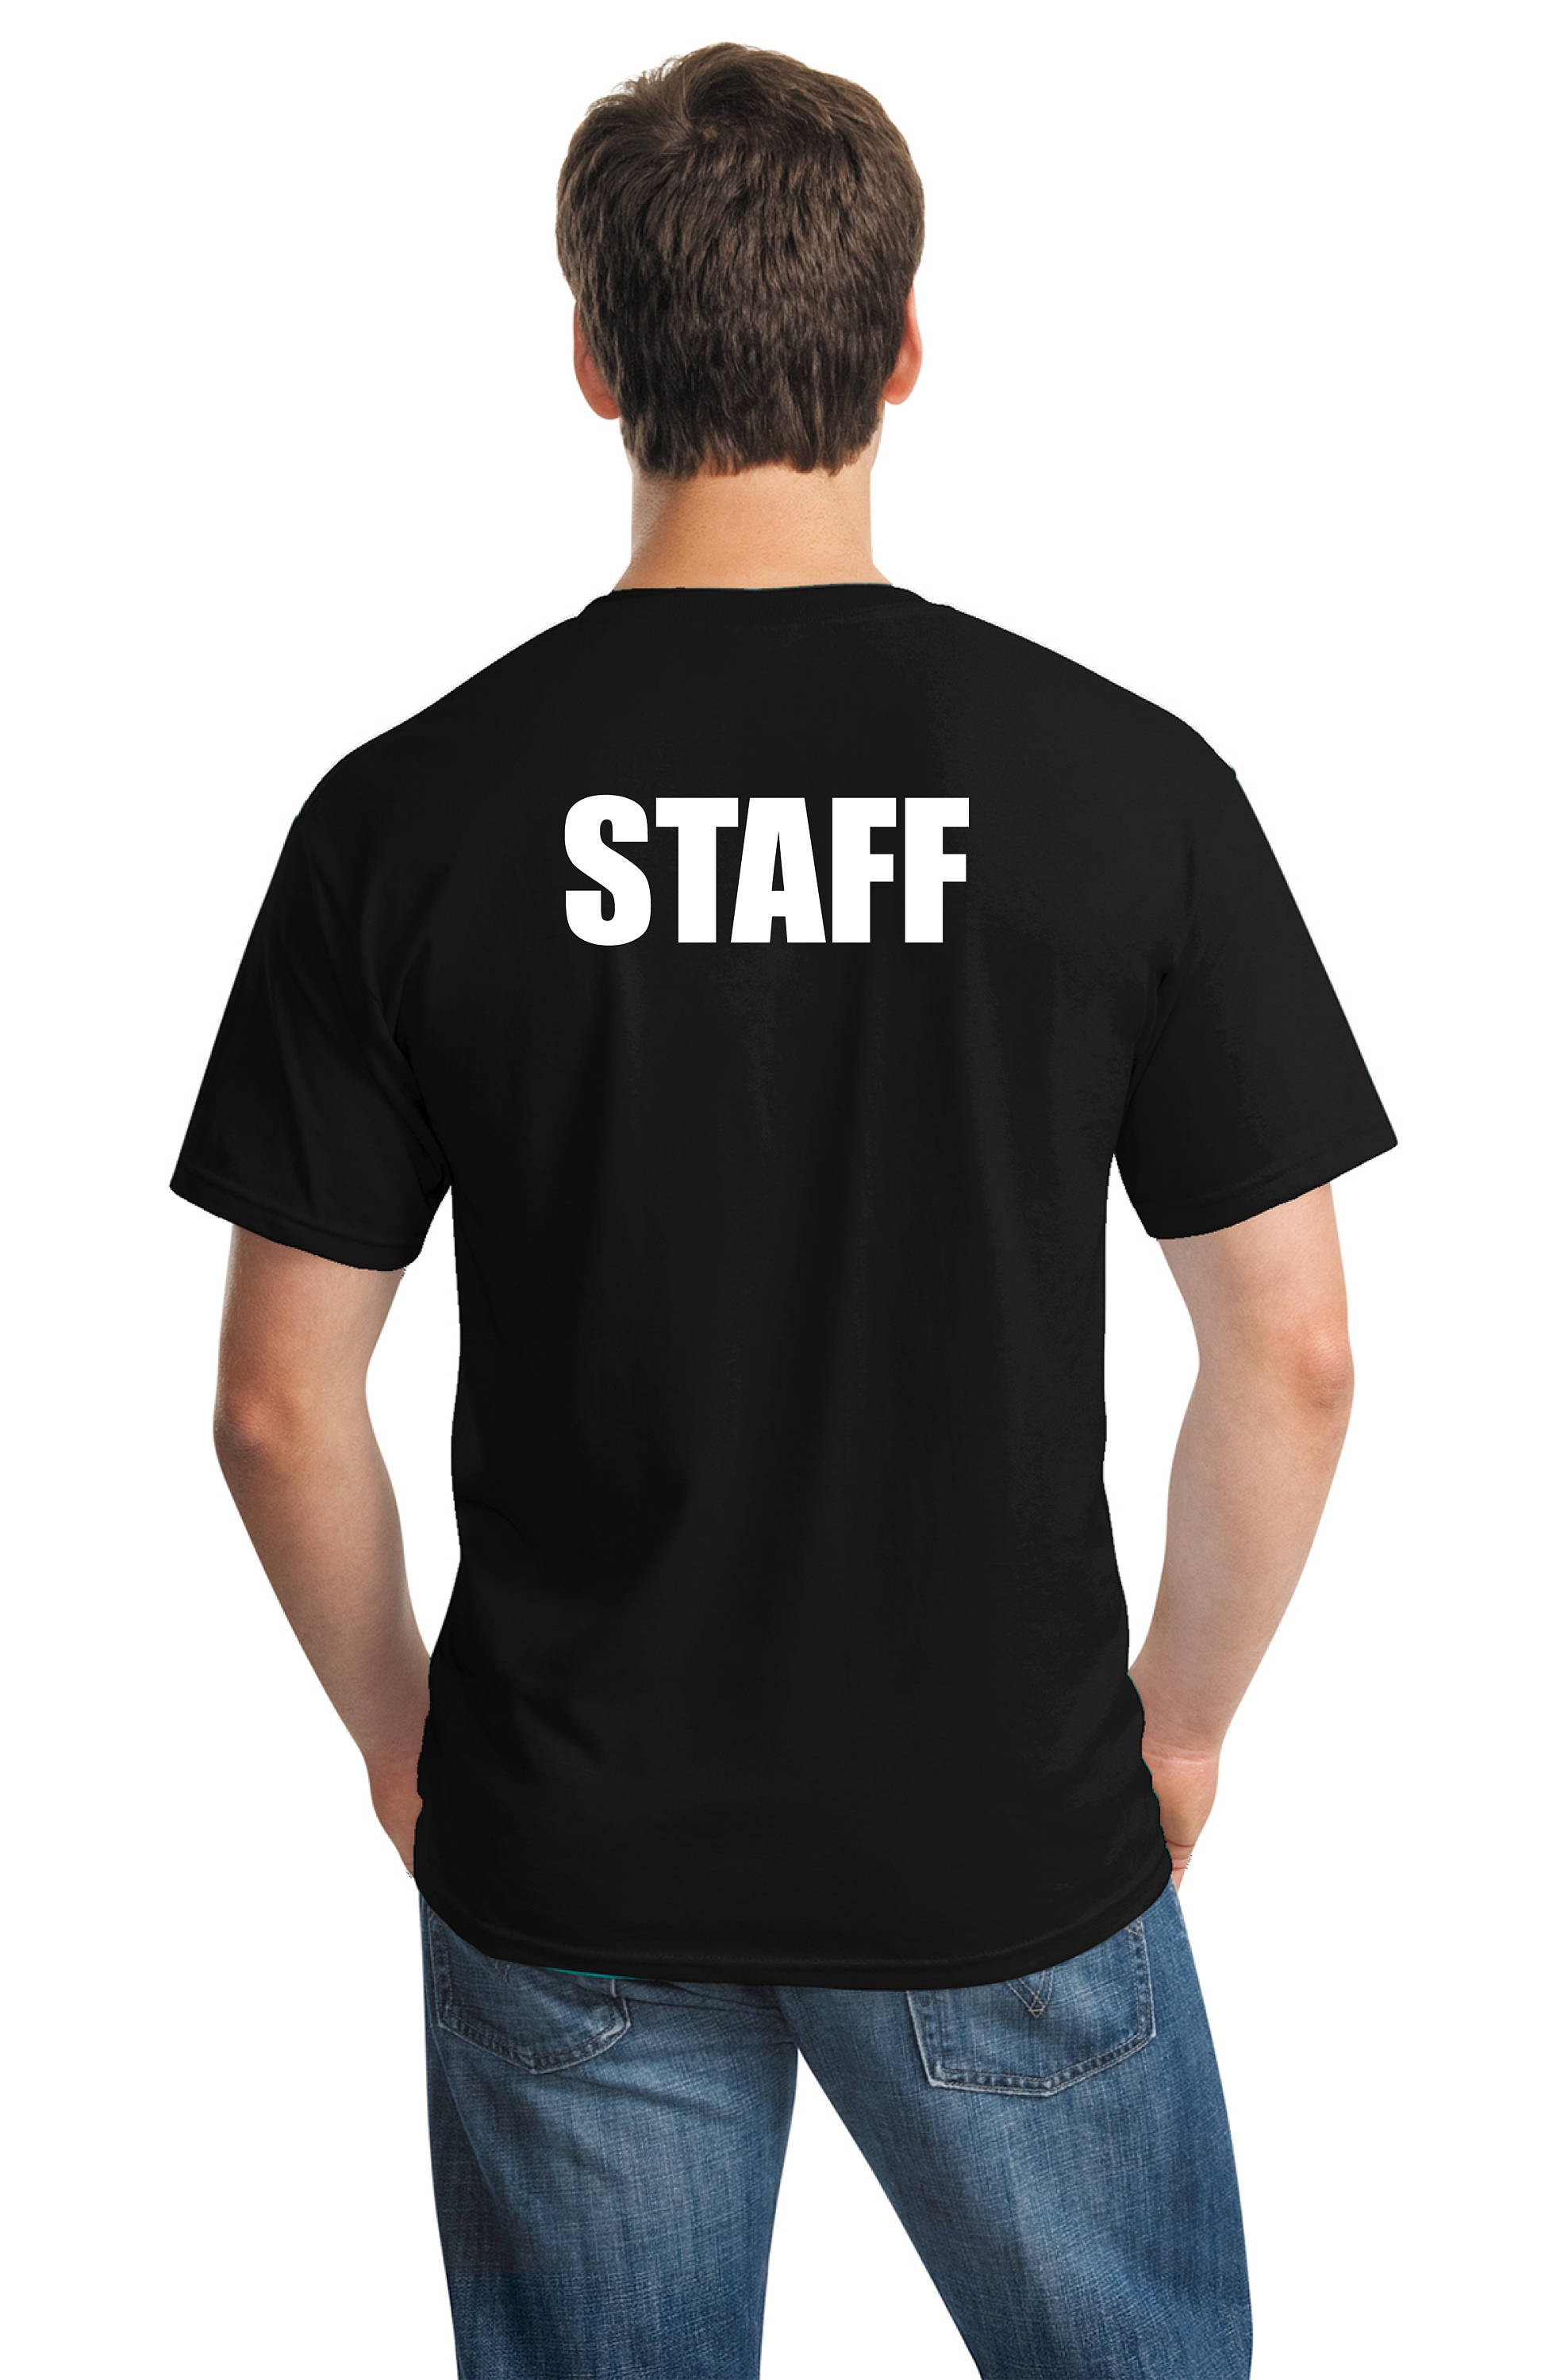 Staff T-shirtevent T-shirt Work T-shirt Church T-shirt - Etsy